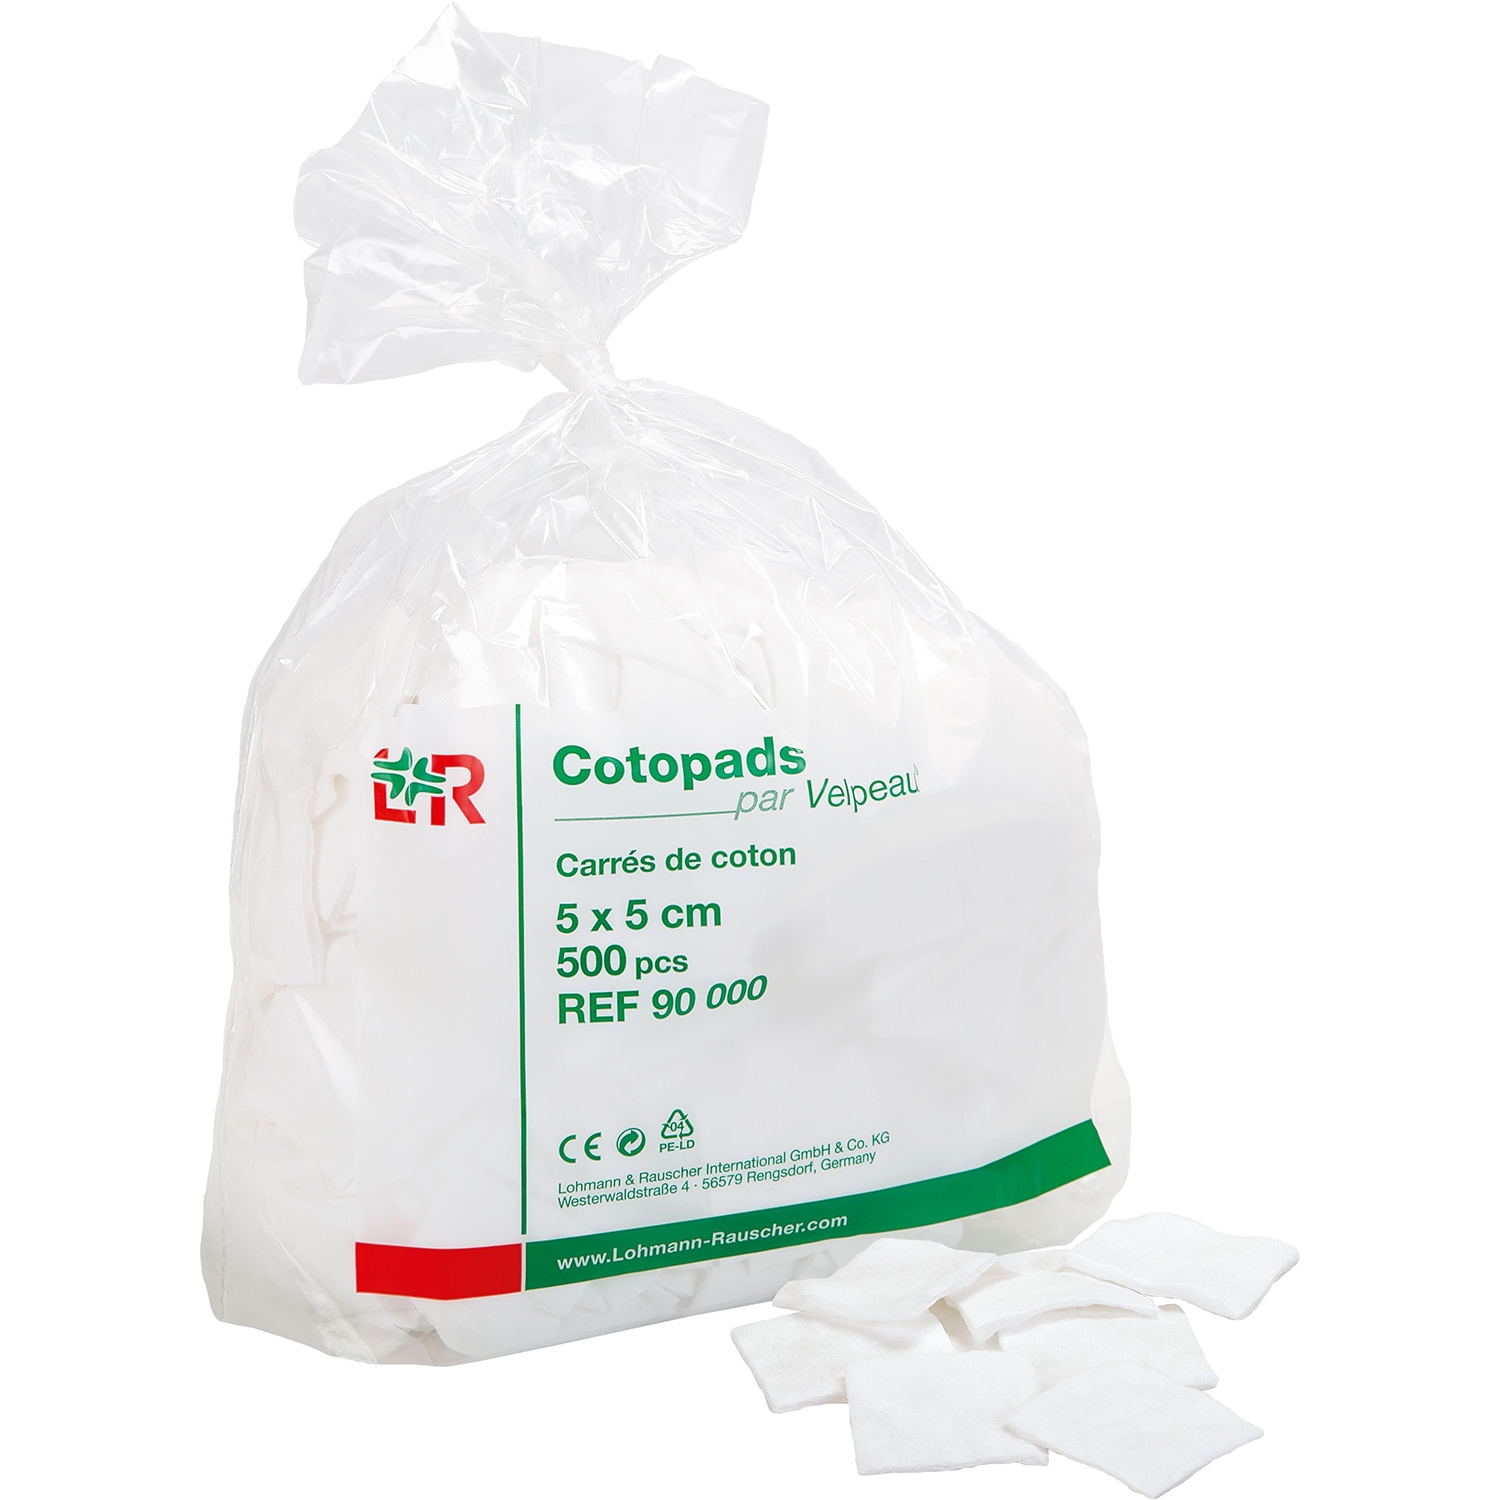 Cotopads coton carré - 5 x 5 cm (500 pcs)